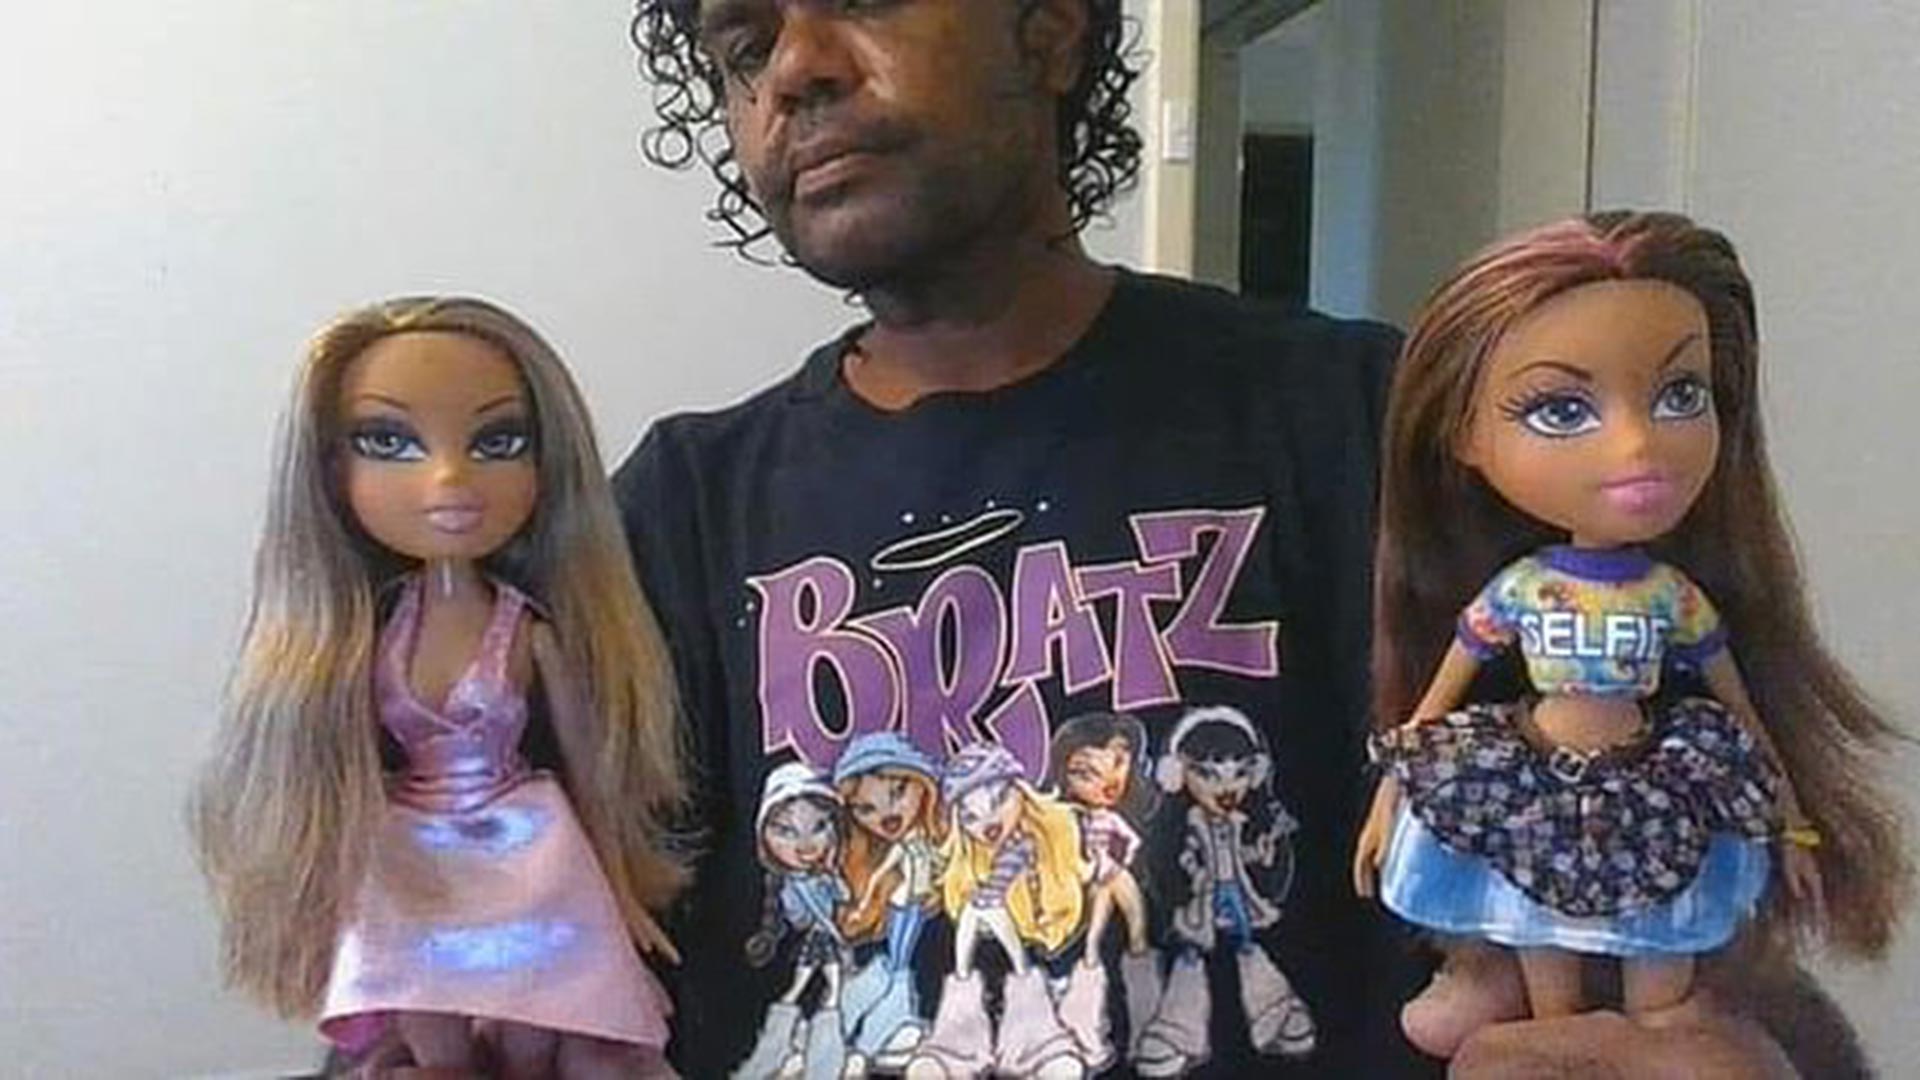 En la casa de Terence Darrell Kellyn  hallaron habitaciones llenas de Bratz Dolls, unas muñecas que fueron llamadas las antibarbies por su estilo vanguardista. Él se hacía llamar Bratz DeLuca